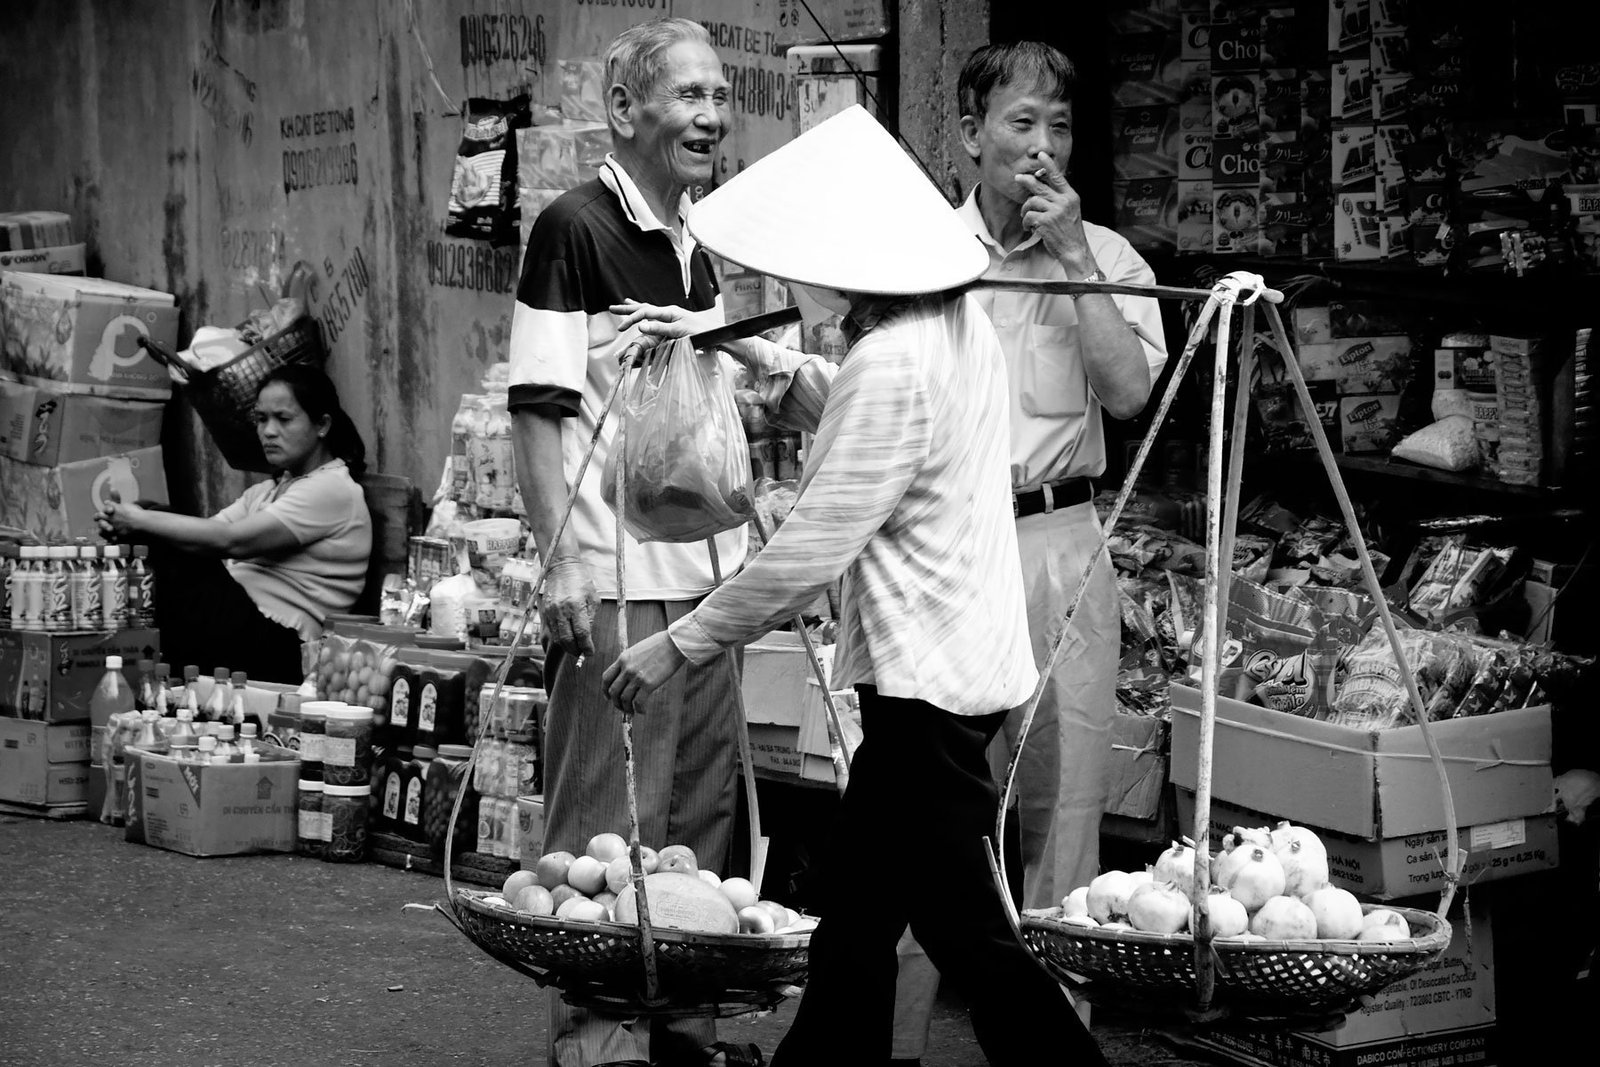 Vietnam in Black & White